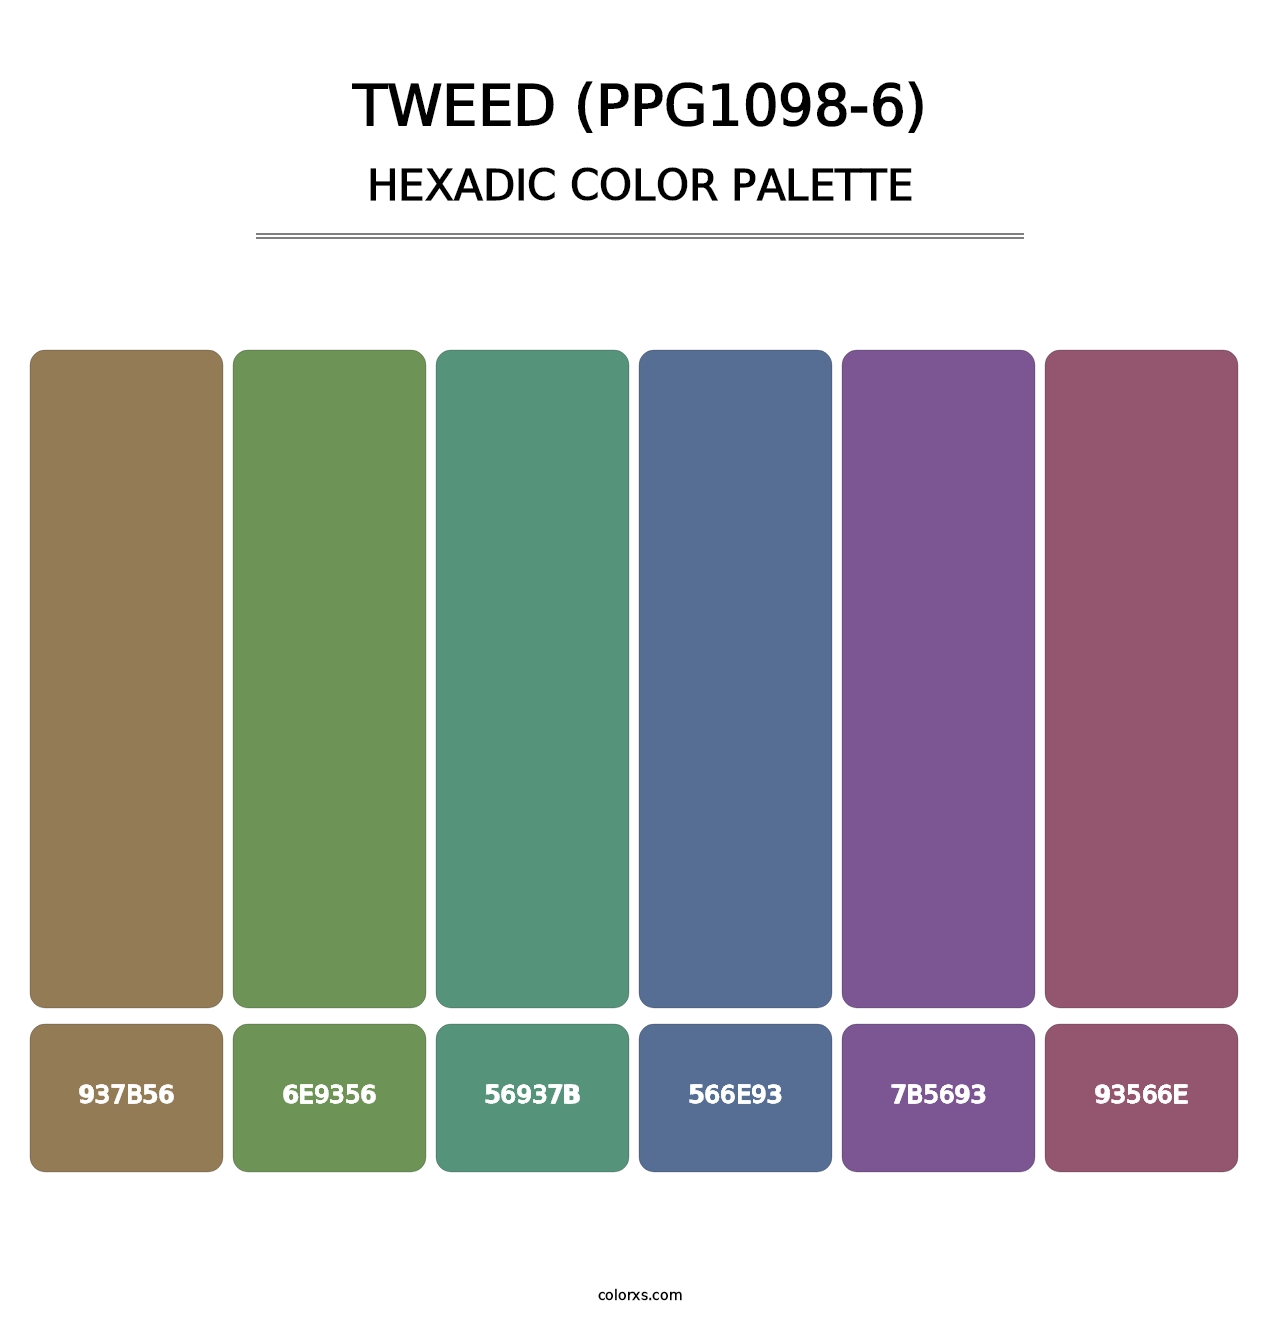 Tweed (PPG1098-6) - Hexadic Color Palette